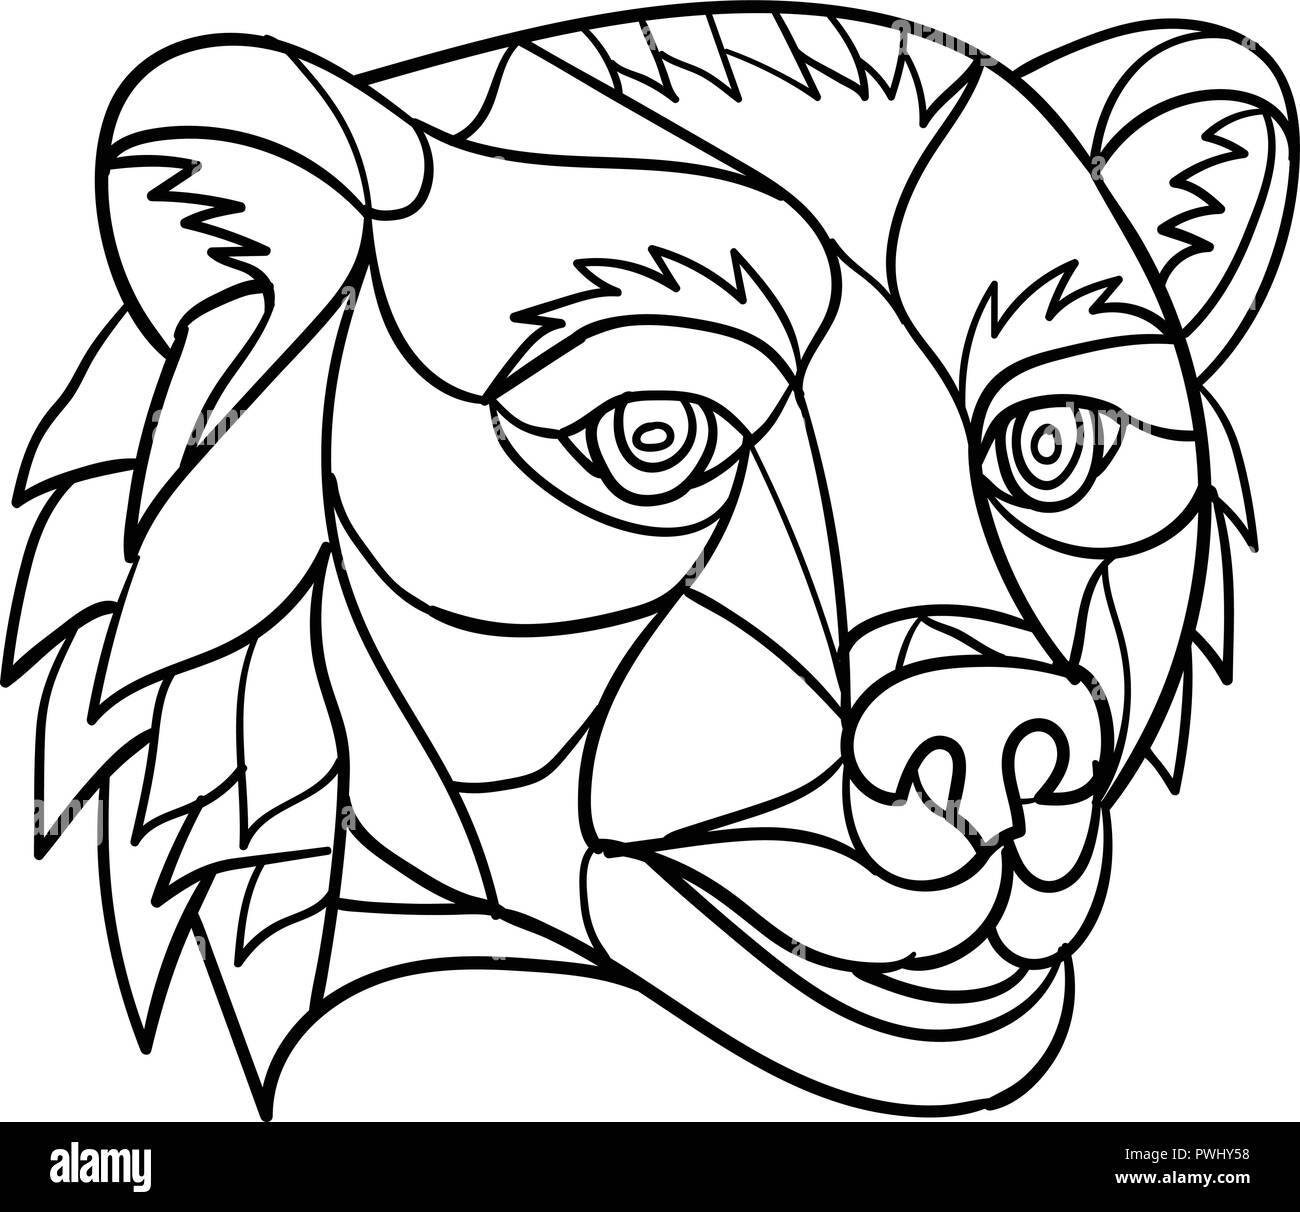 Poligono di basso in stile mosaico illustrazione di un orso grizzly o orso bruno in testa su sfondo isolato in bianco e nero. Illustrazione Vettoriale